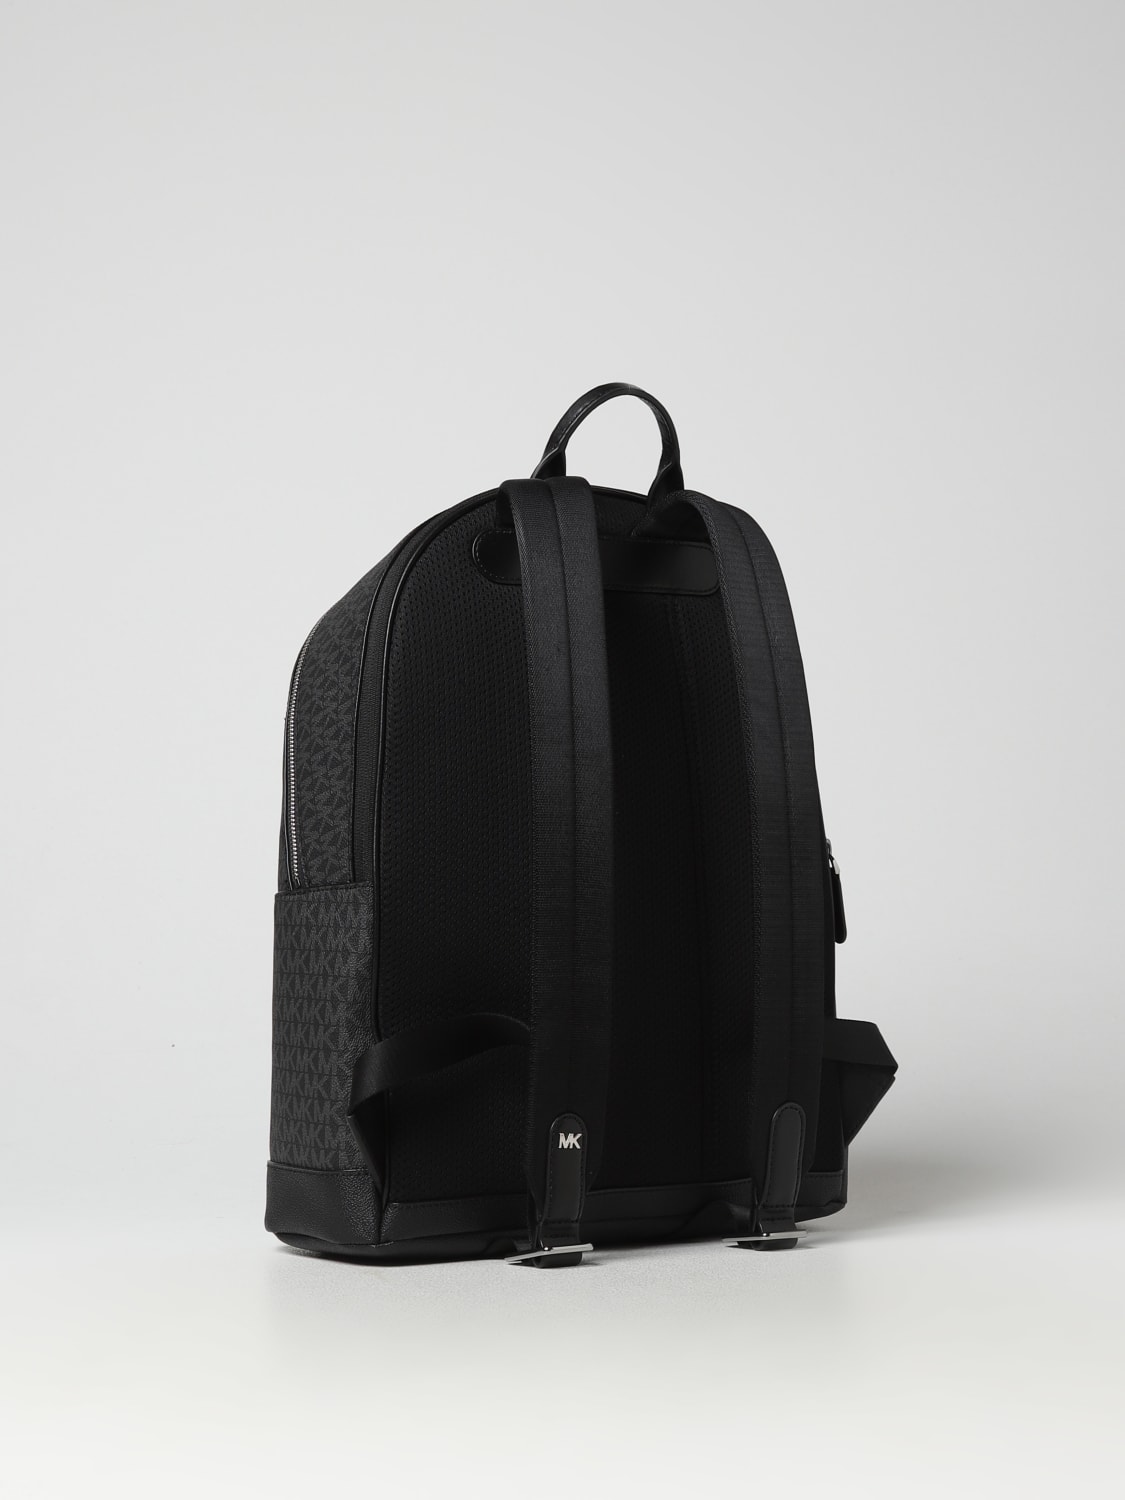 MICHAEL KORS: backpack for man - Black